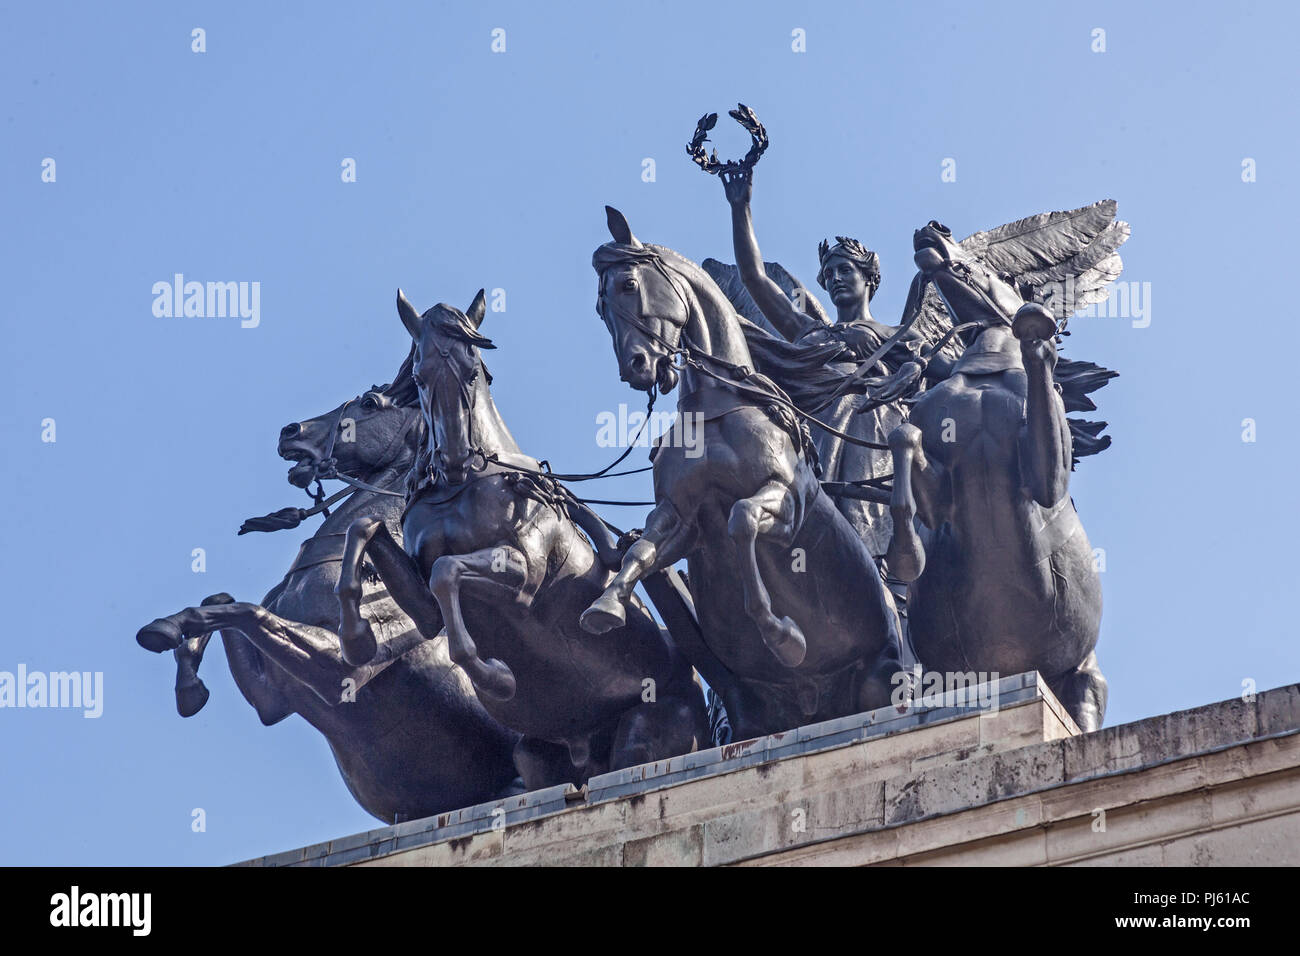 La sculpture de bronze de Nike, la déesse ailée de la Victoire, la conduite d'un cheval, quatre chars surmontant le Wellington Arch à Hyde Park Corner Banque D'Images